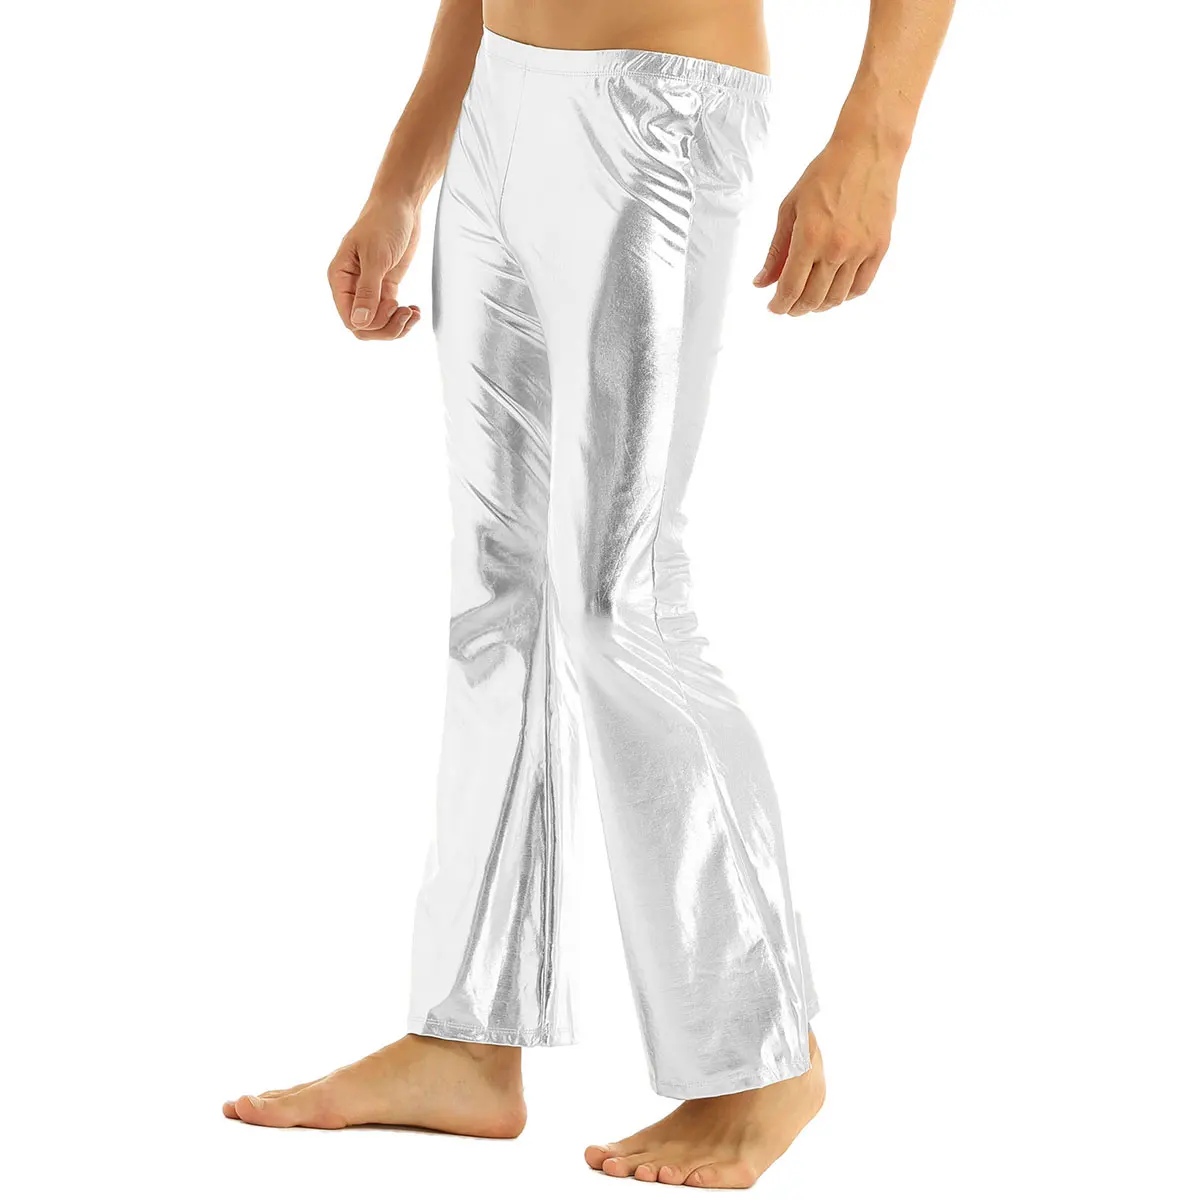 Iiniim/мужские брюки для взрослых в стиле панк для ночного клуба, блестящие металлические брюки в стиле диско с колокольчиком, расклешенные длинные штаны, костюм Человека, брюки